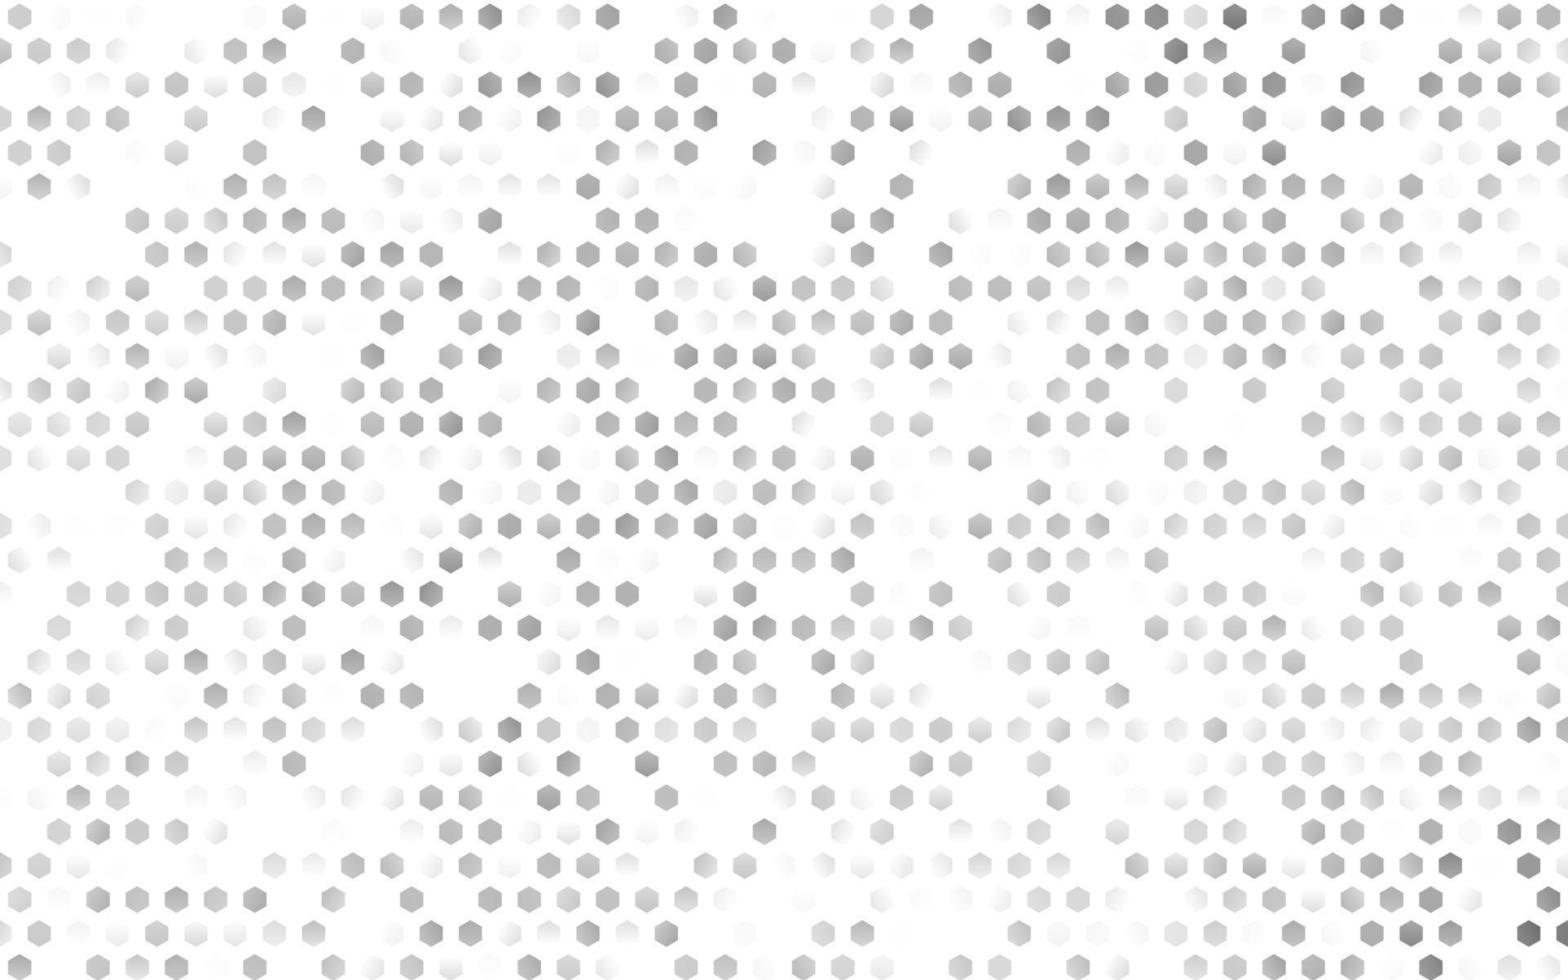 cubierta vectorial gris plateada clara con un conjunto de hexágonos. vector